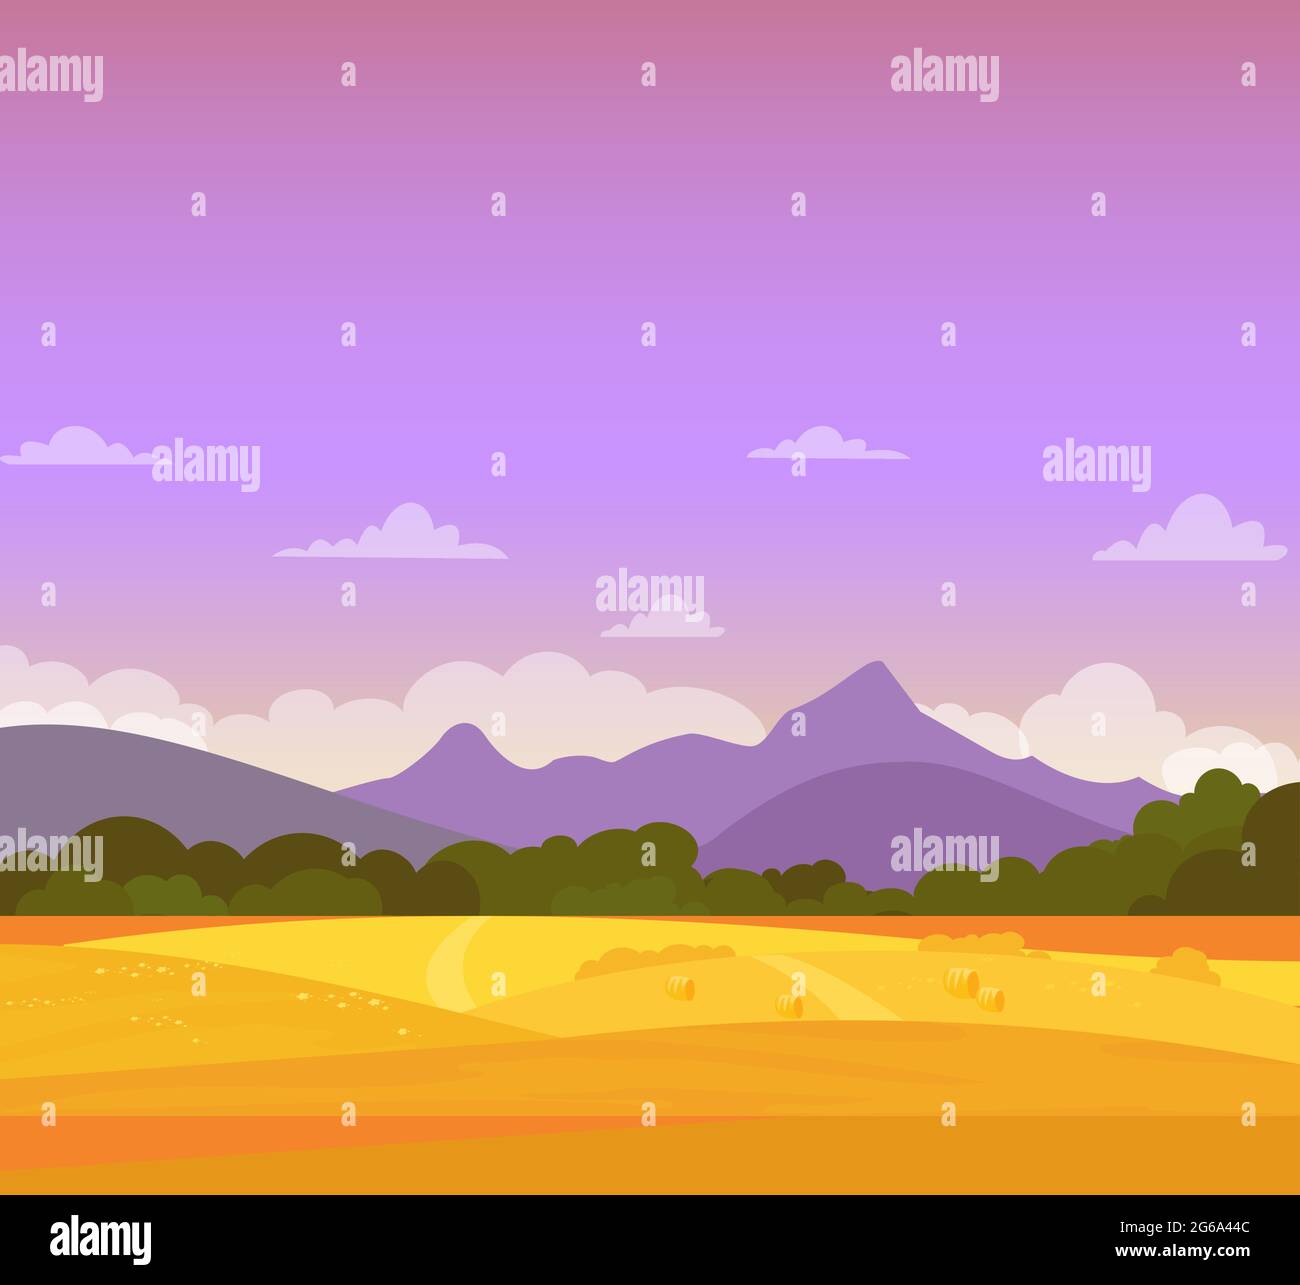 Vektor-Illustration von schönen bunten Herbstlandschaft mit Feldern, Bergen und Himmel. Farmland-Konzept, flacher Cartoon-Stil. Stock Vektor